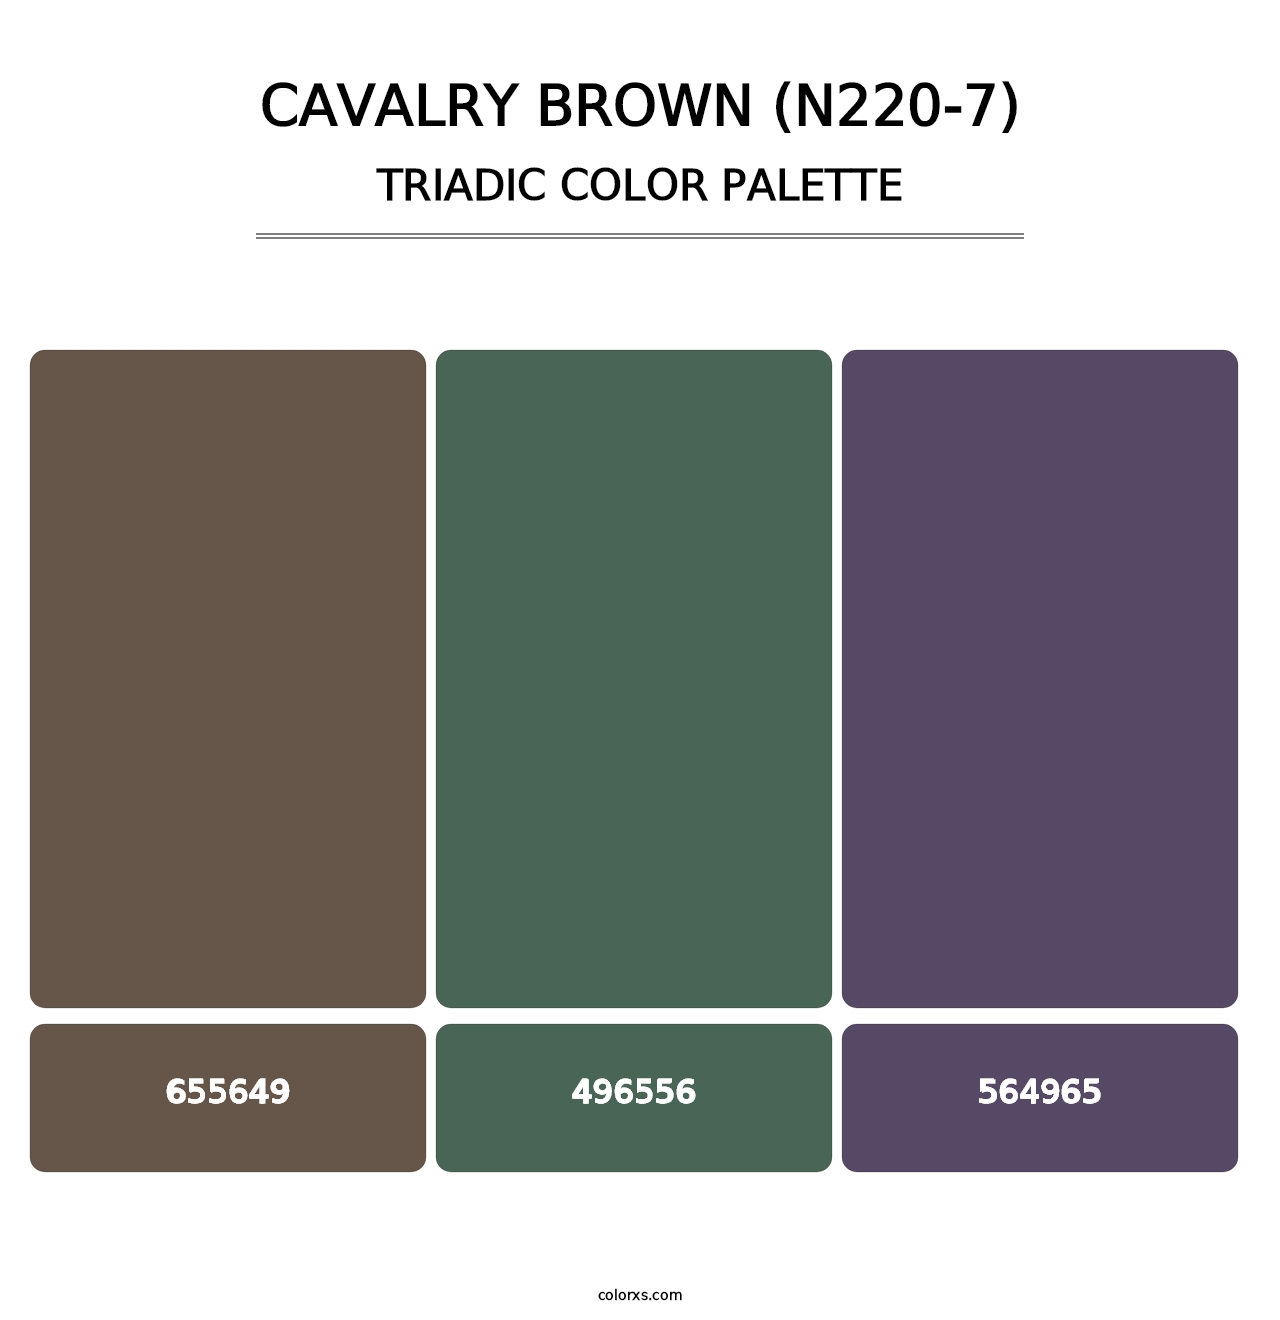 Cavalry Brown (N220-7) - Triadic Color Palette